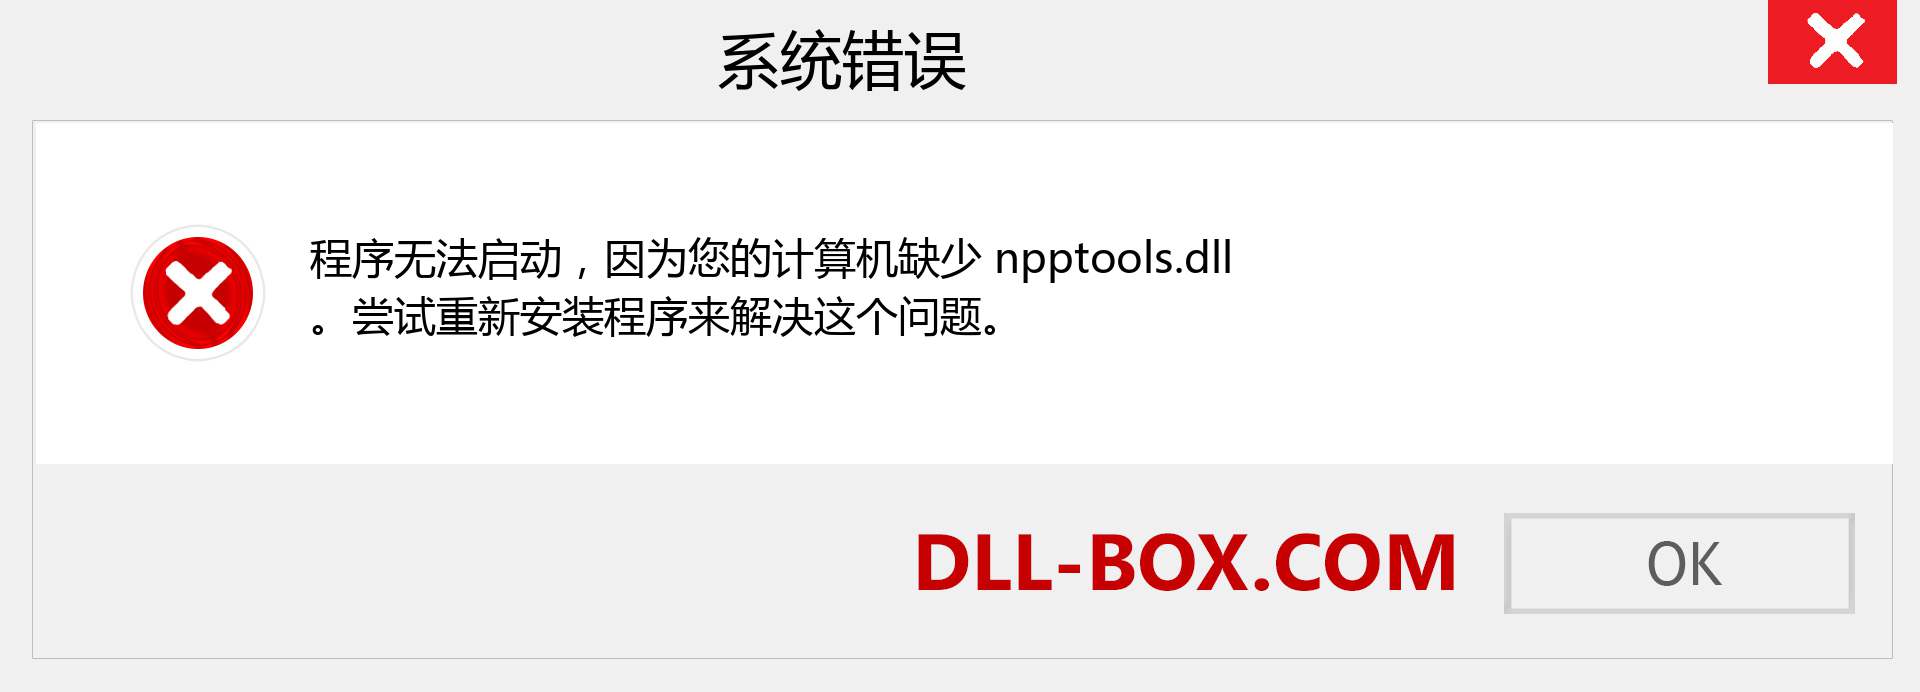 npptools.dll 文件丢失？。 适用于 Windows 7、8、10 的下载 - 修复 Windows、照片、图像上的 npptools dll 丢失错误